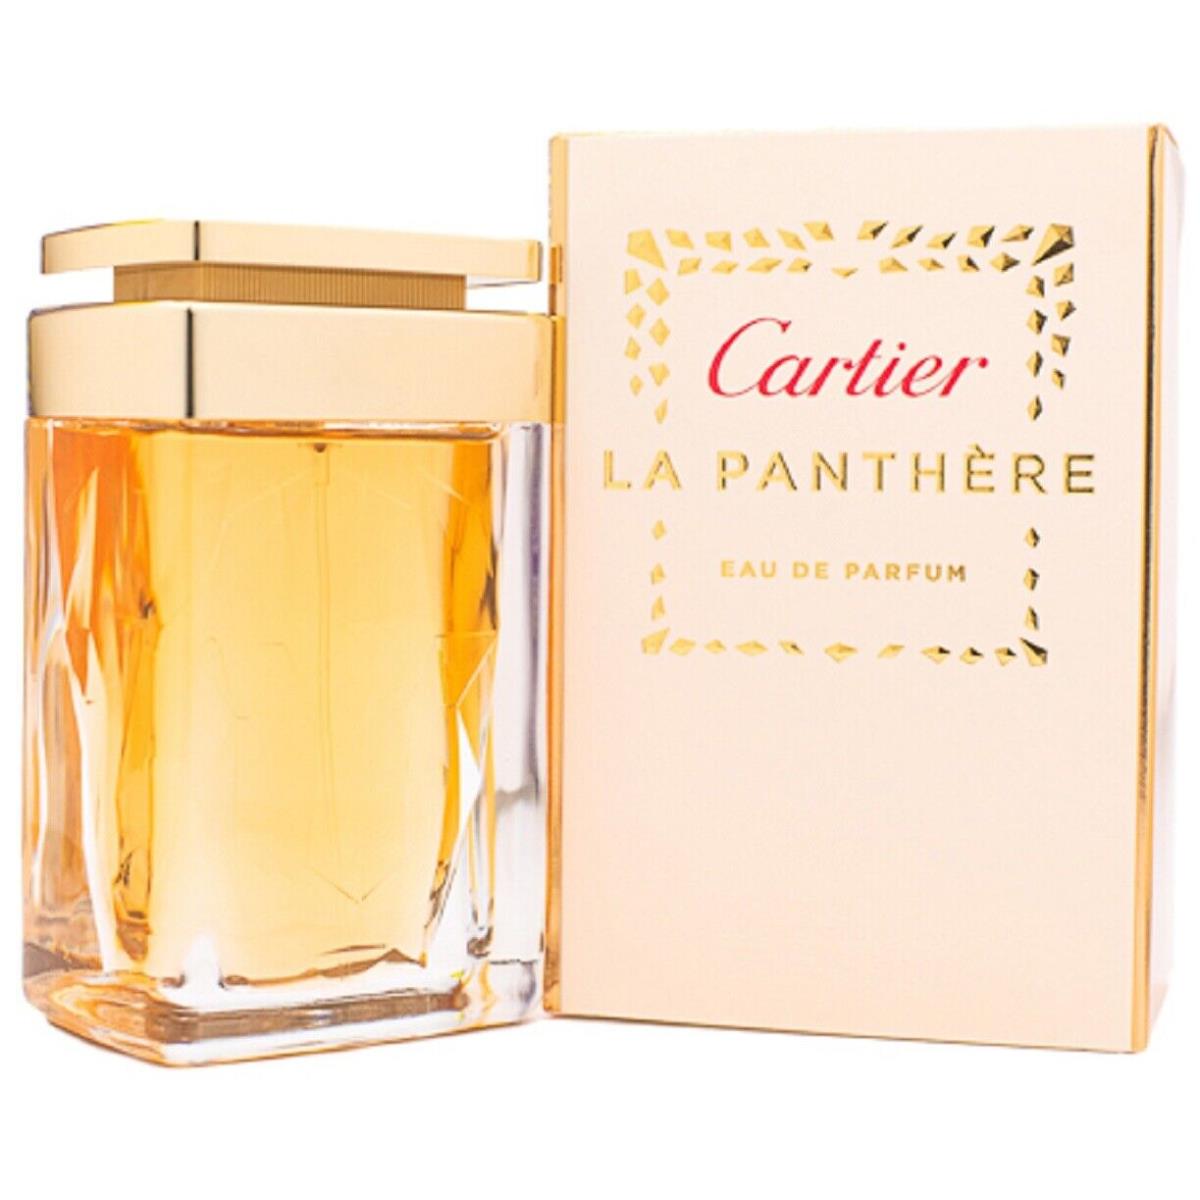 LA Panthere Cartier 2.5 oz / 75 ml Eau De Parfum Edp Women Perfume Spray